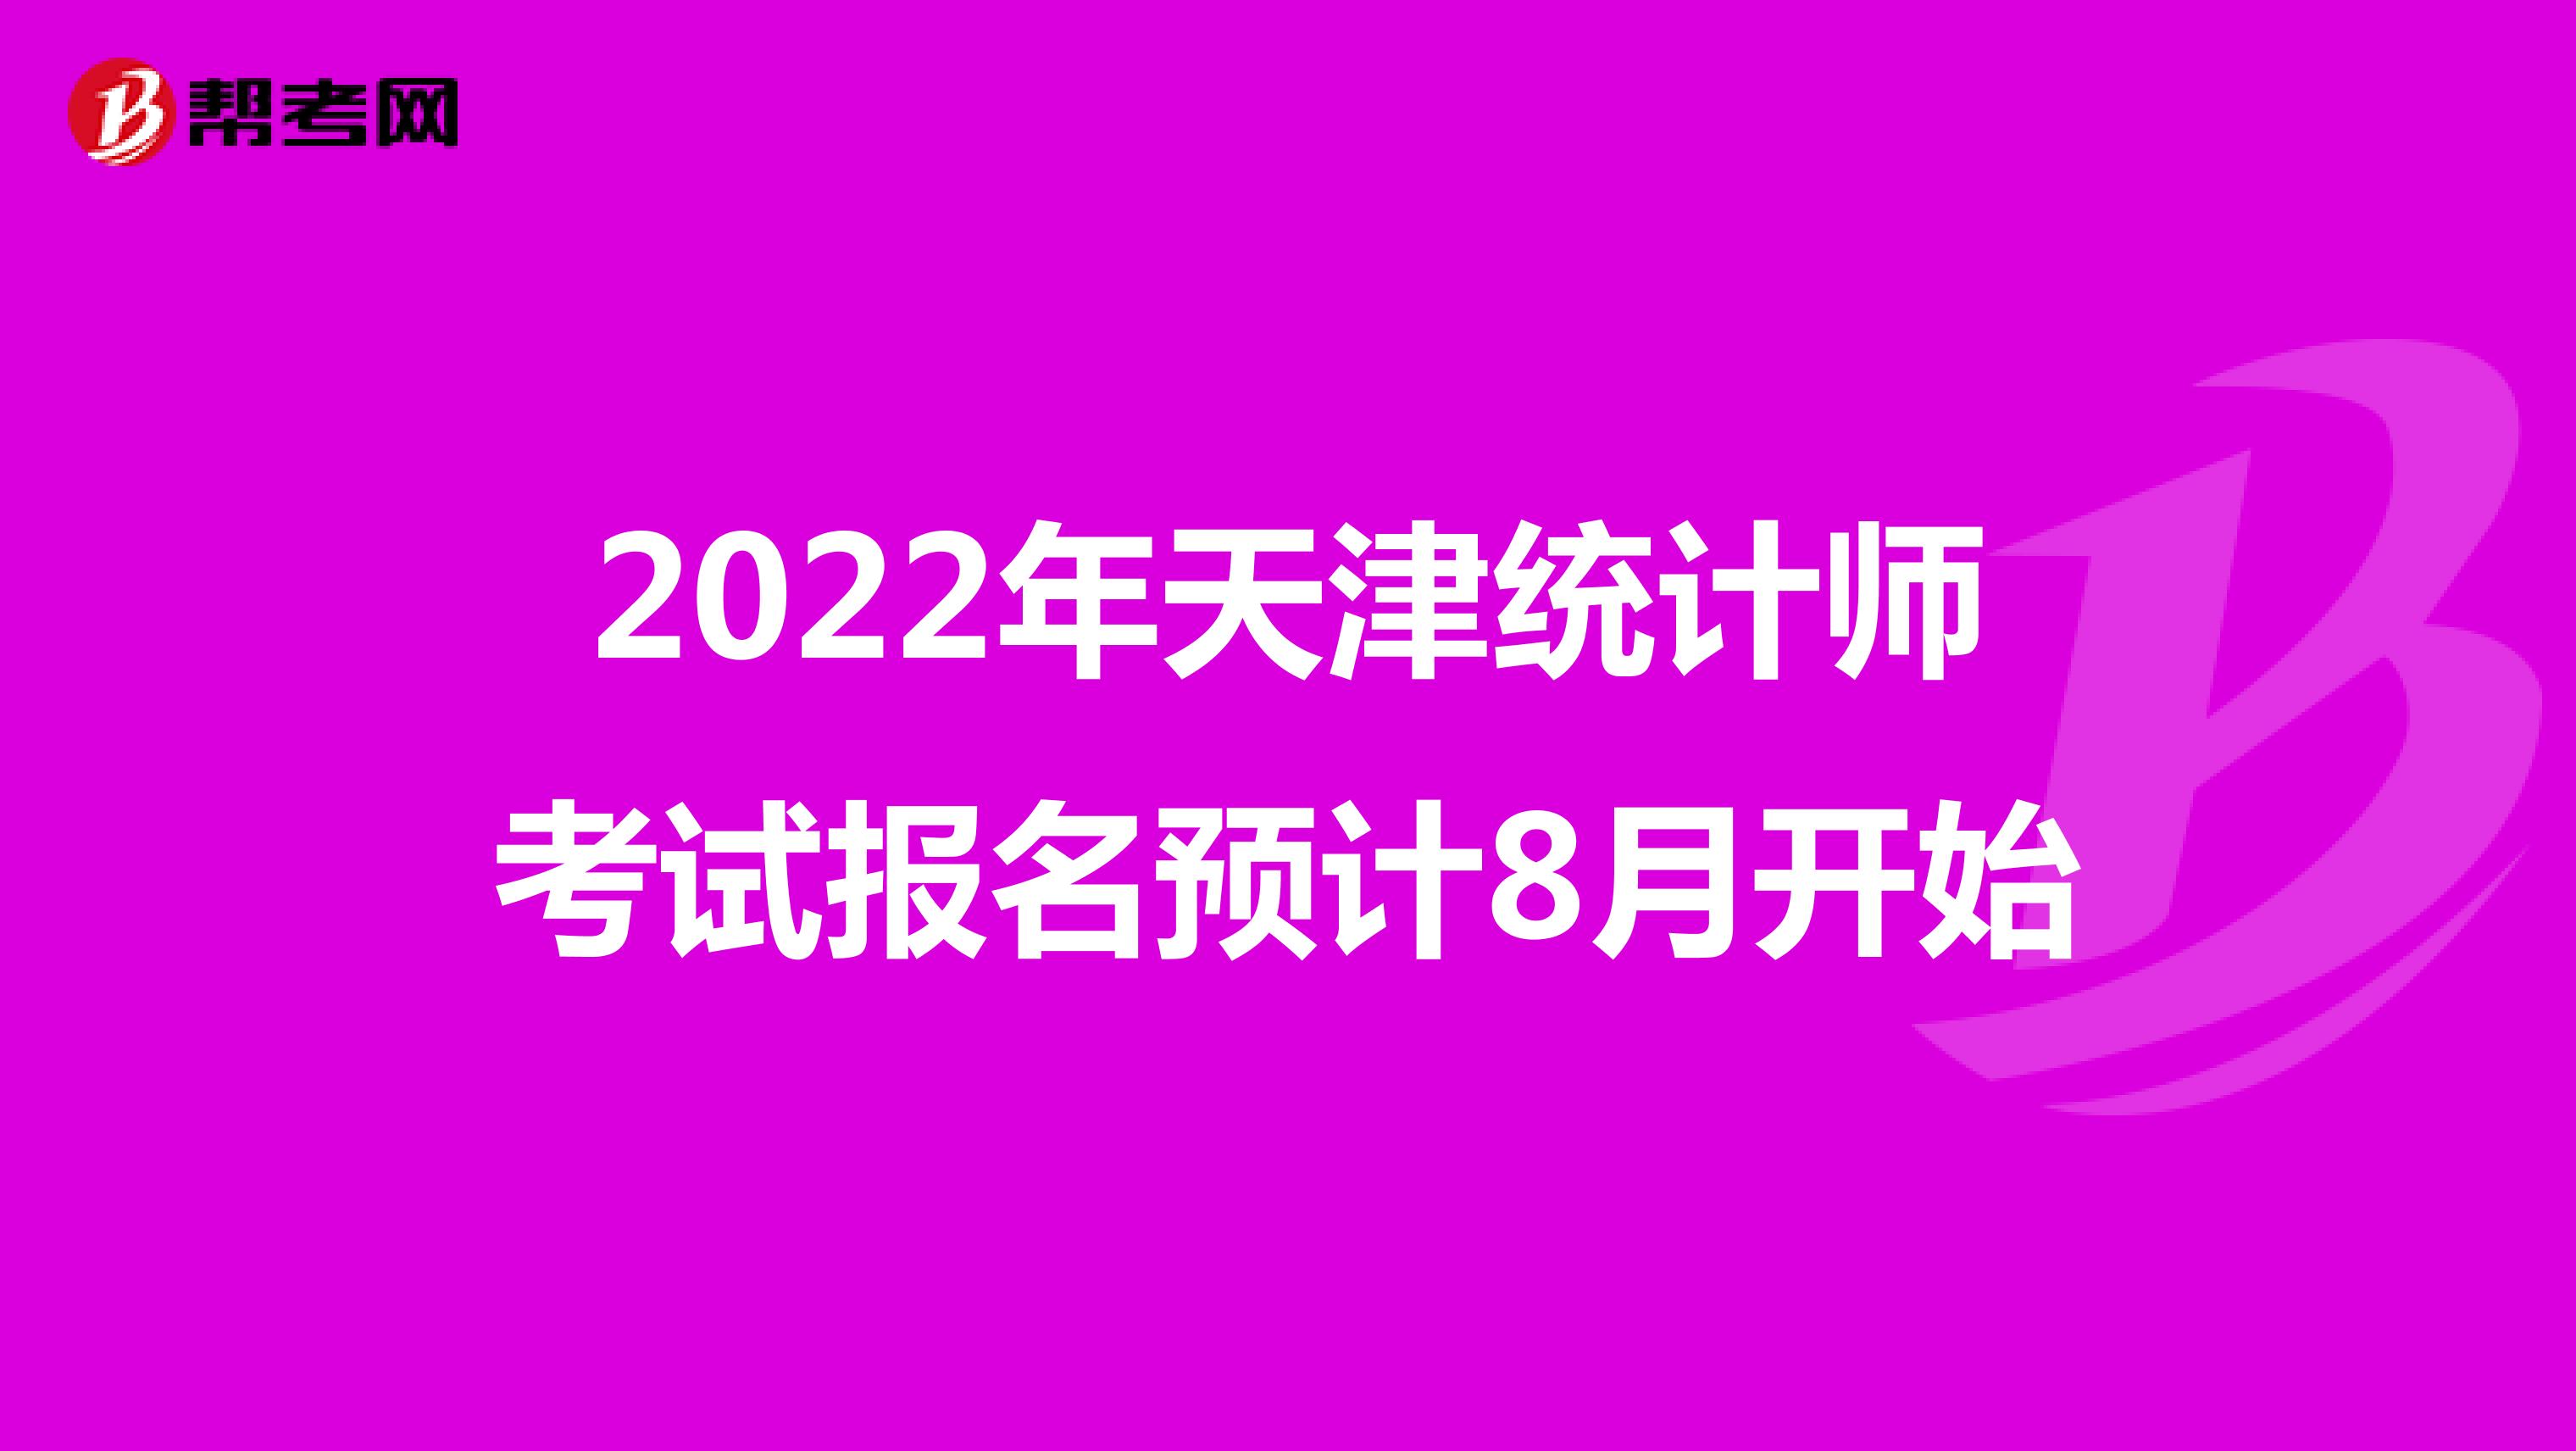 2022年天津统计师考试报名预计8月开始